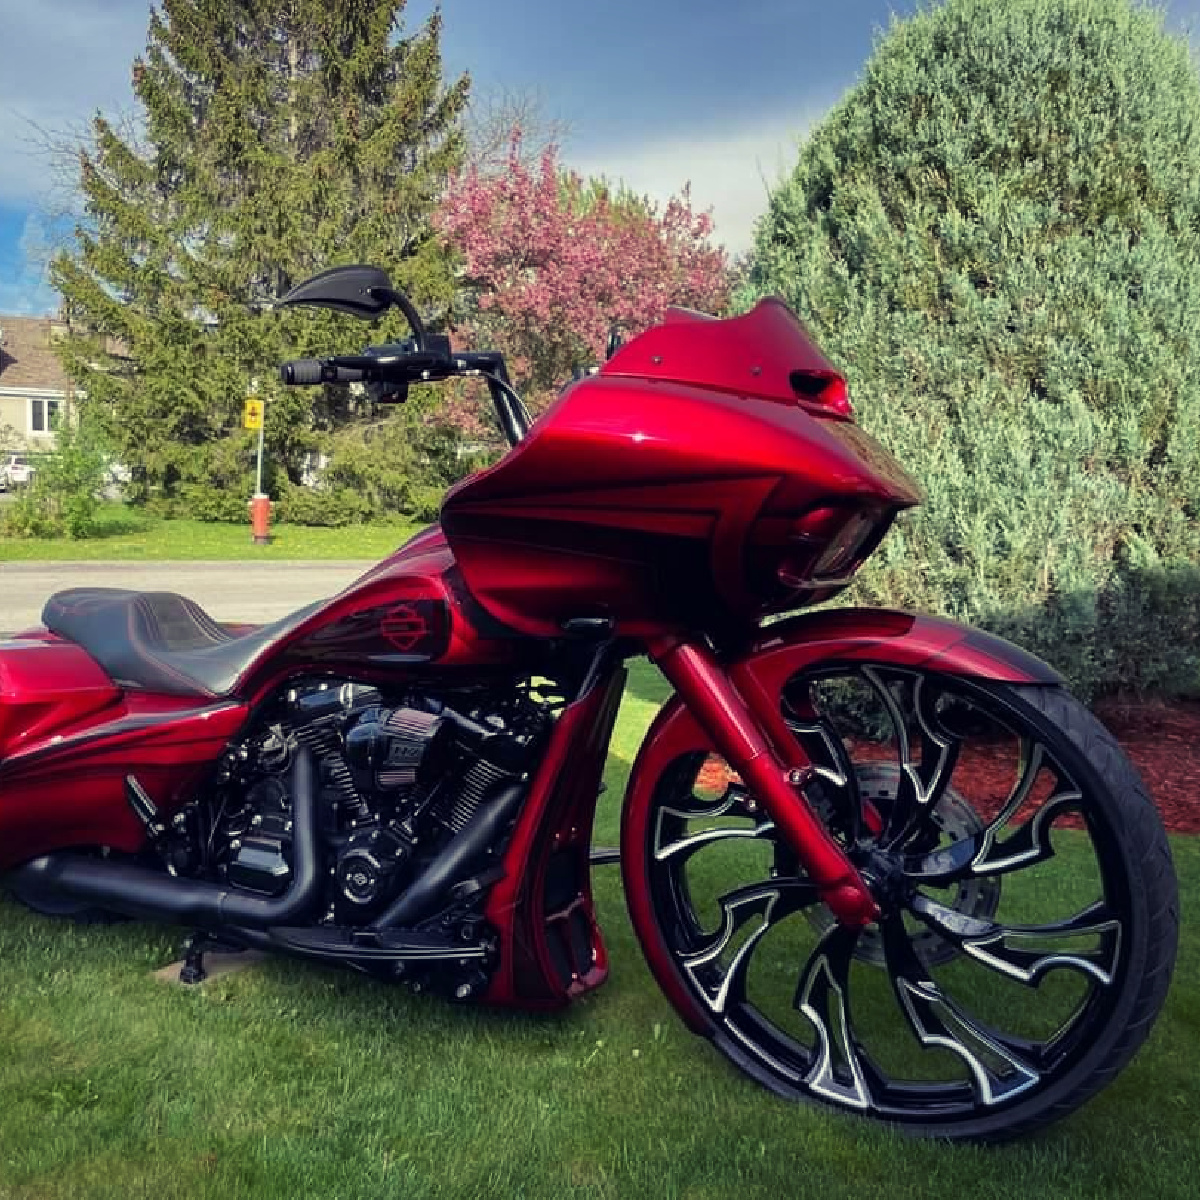 3D Guinzu black double cut Motorcycle wheel Harley Roadglide Bagger gallery image 1200 x 1200